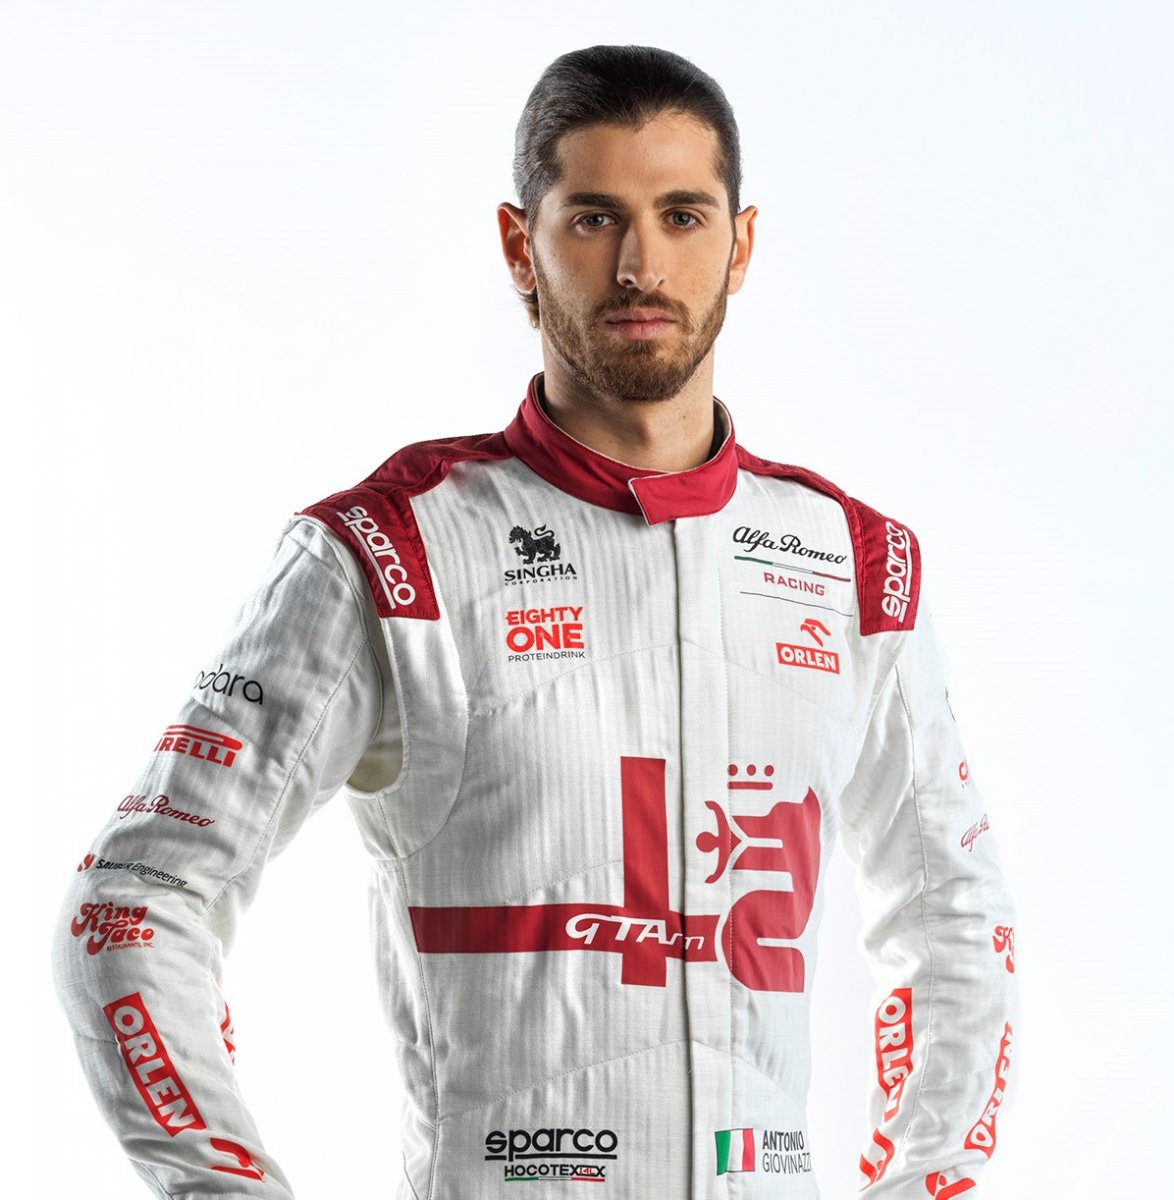 Zespół F1 Alfa Romeo Racing Orlen zaprezentował bolid na